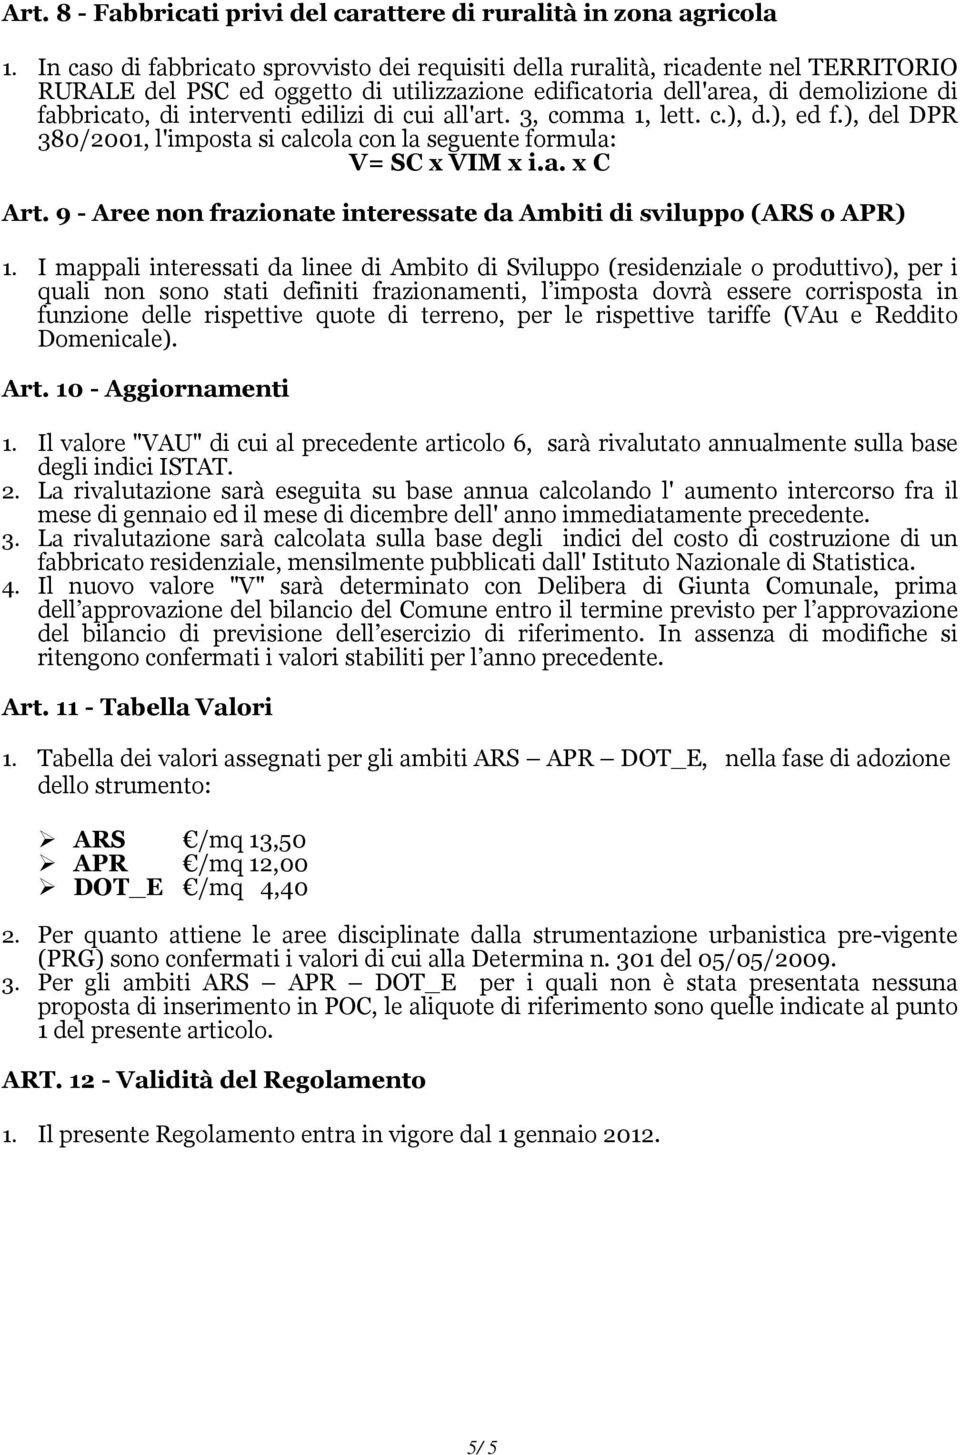 edilizi di cui all'art. 3, comma 1, lett. c.), d.), ed f.), del DPR 380/2001, l'imposta si calcola con la seguente formula: V= SC x VIM x i.a. x C Art.